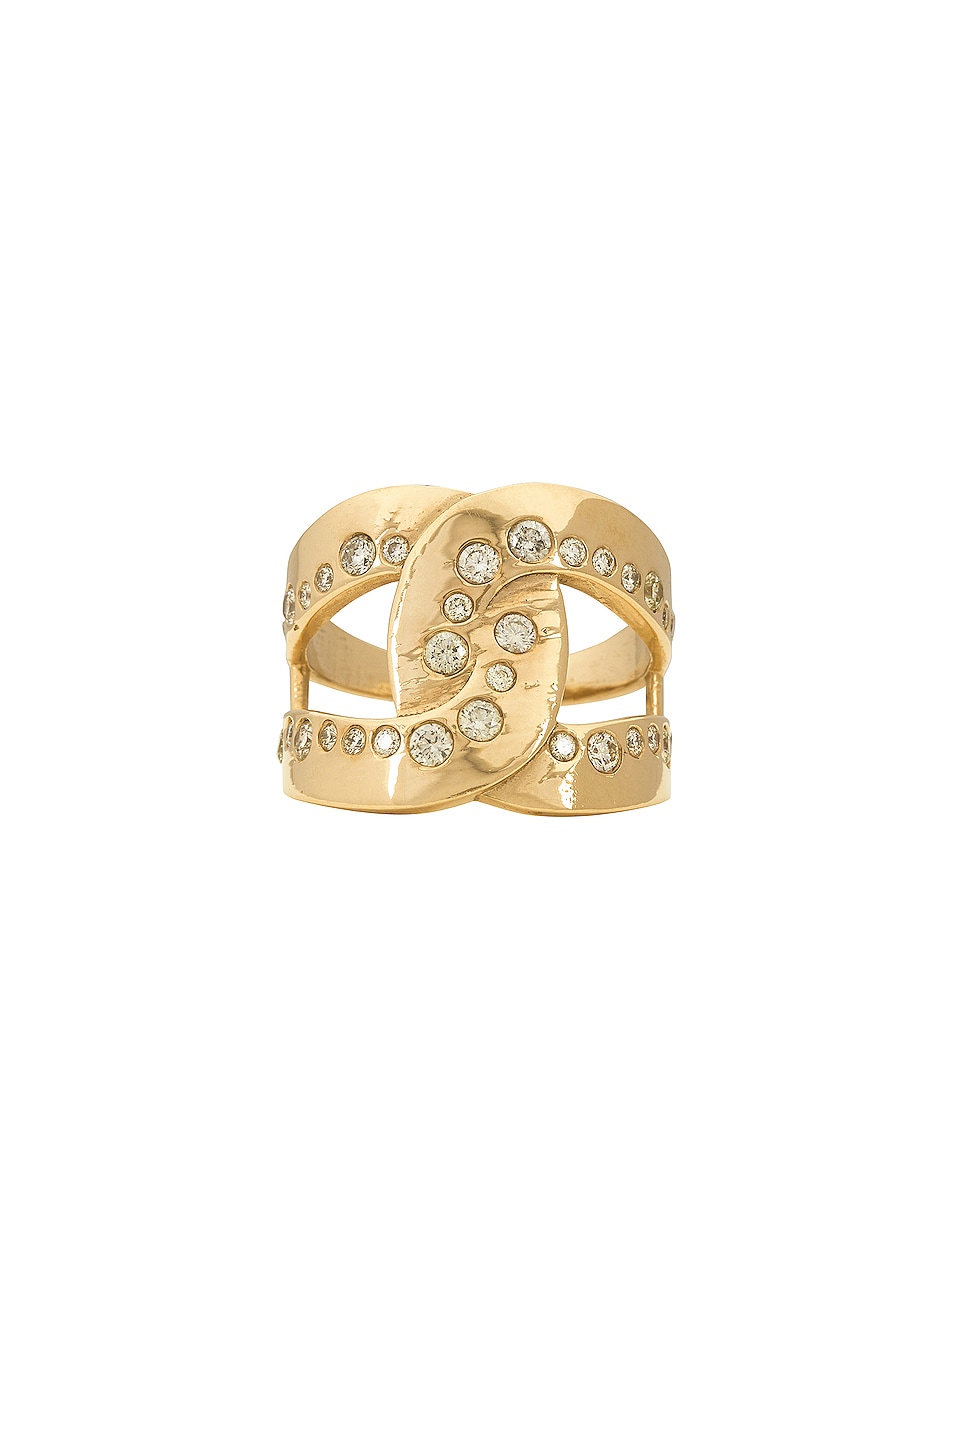 Ring in Metallic Gold